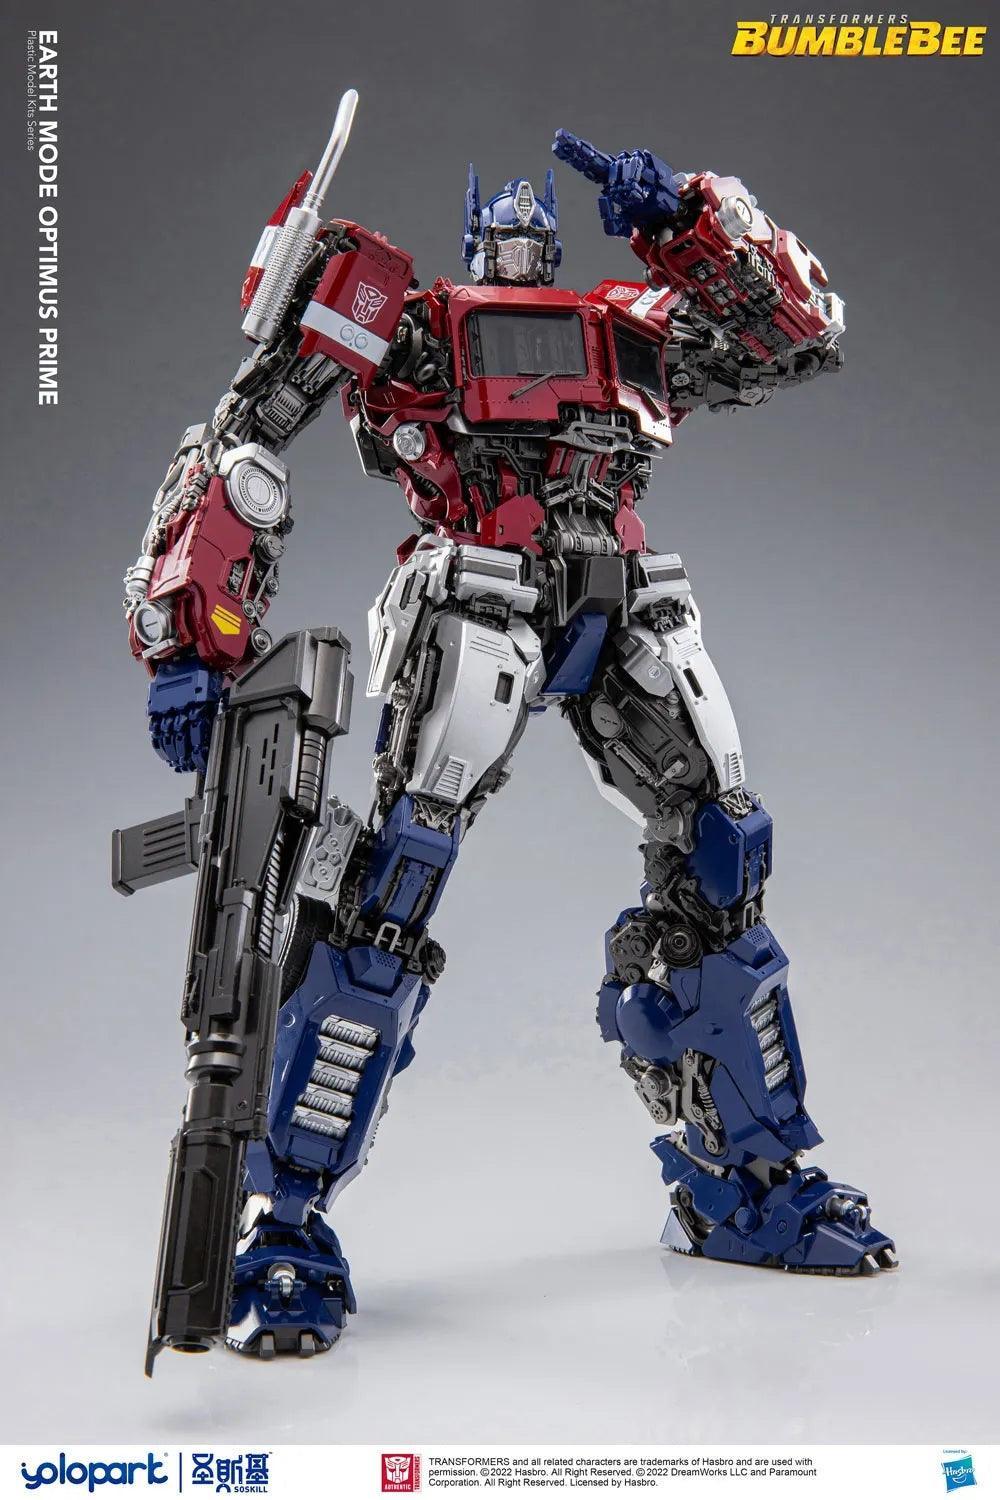 Yolopark - Transformers Earth Mode Optimus Prime Model Kit